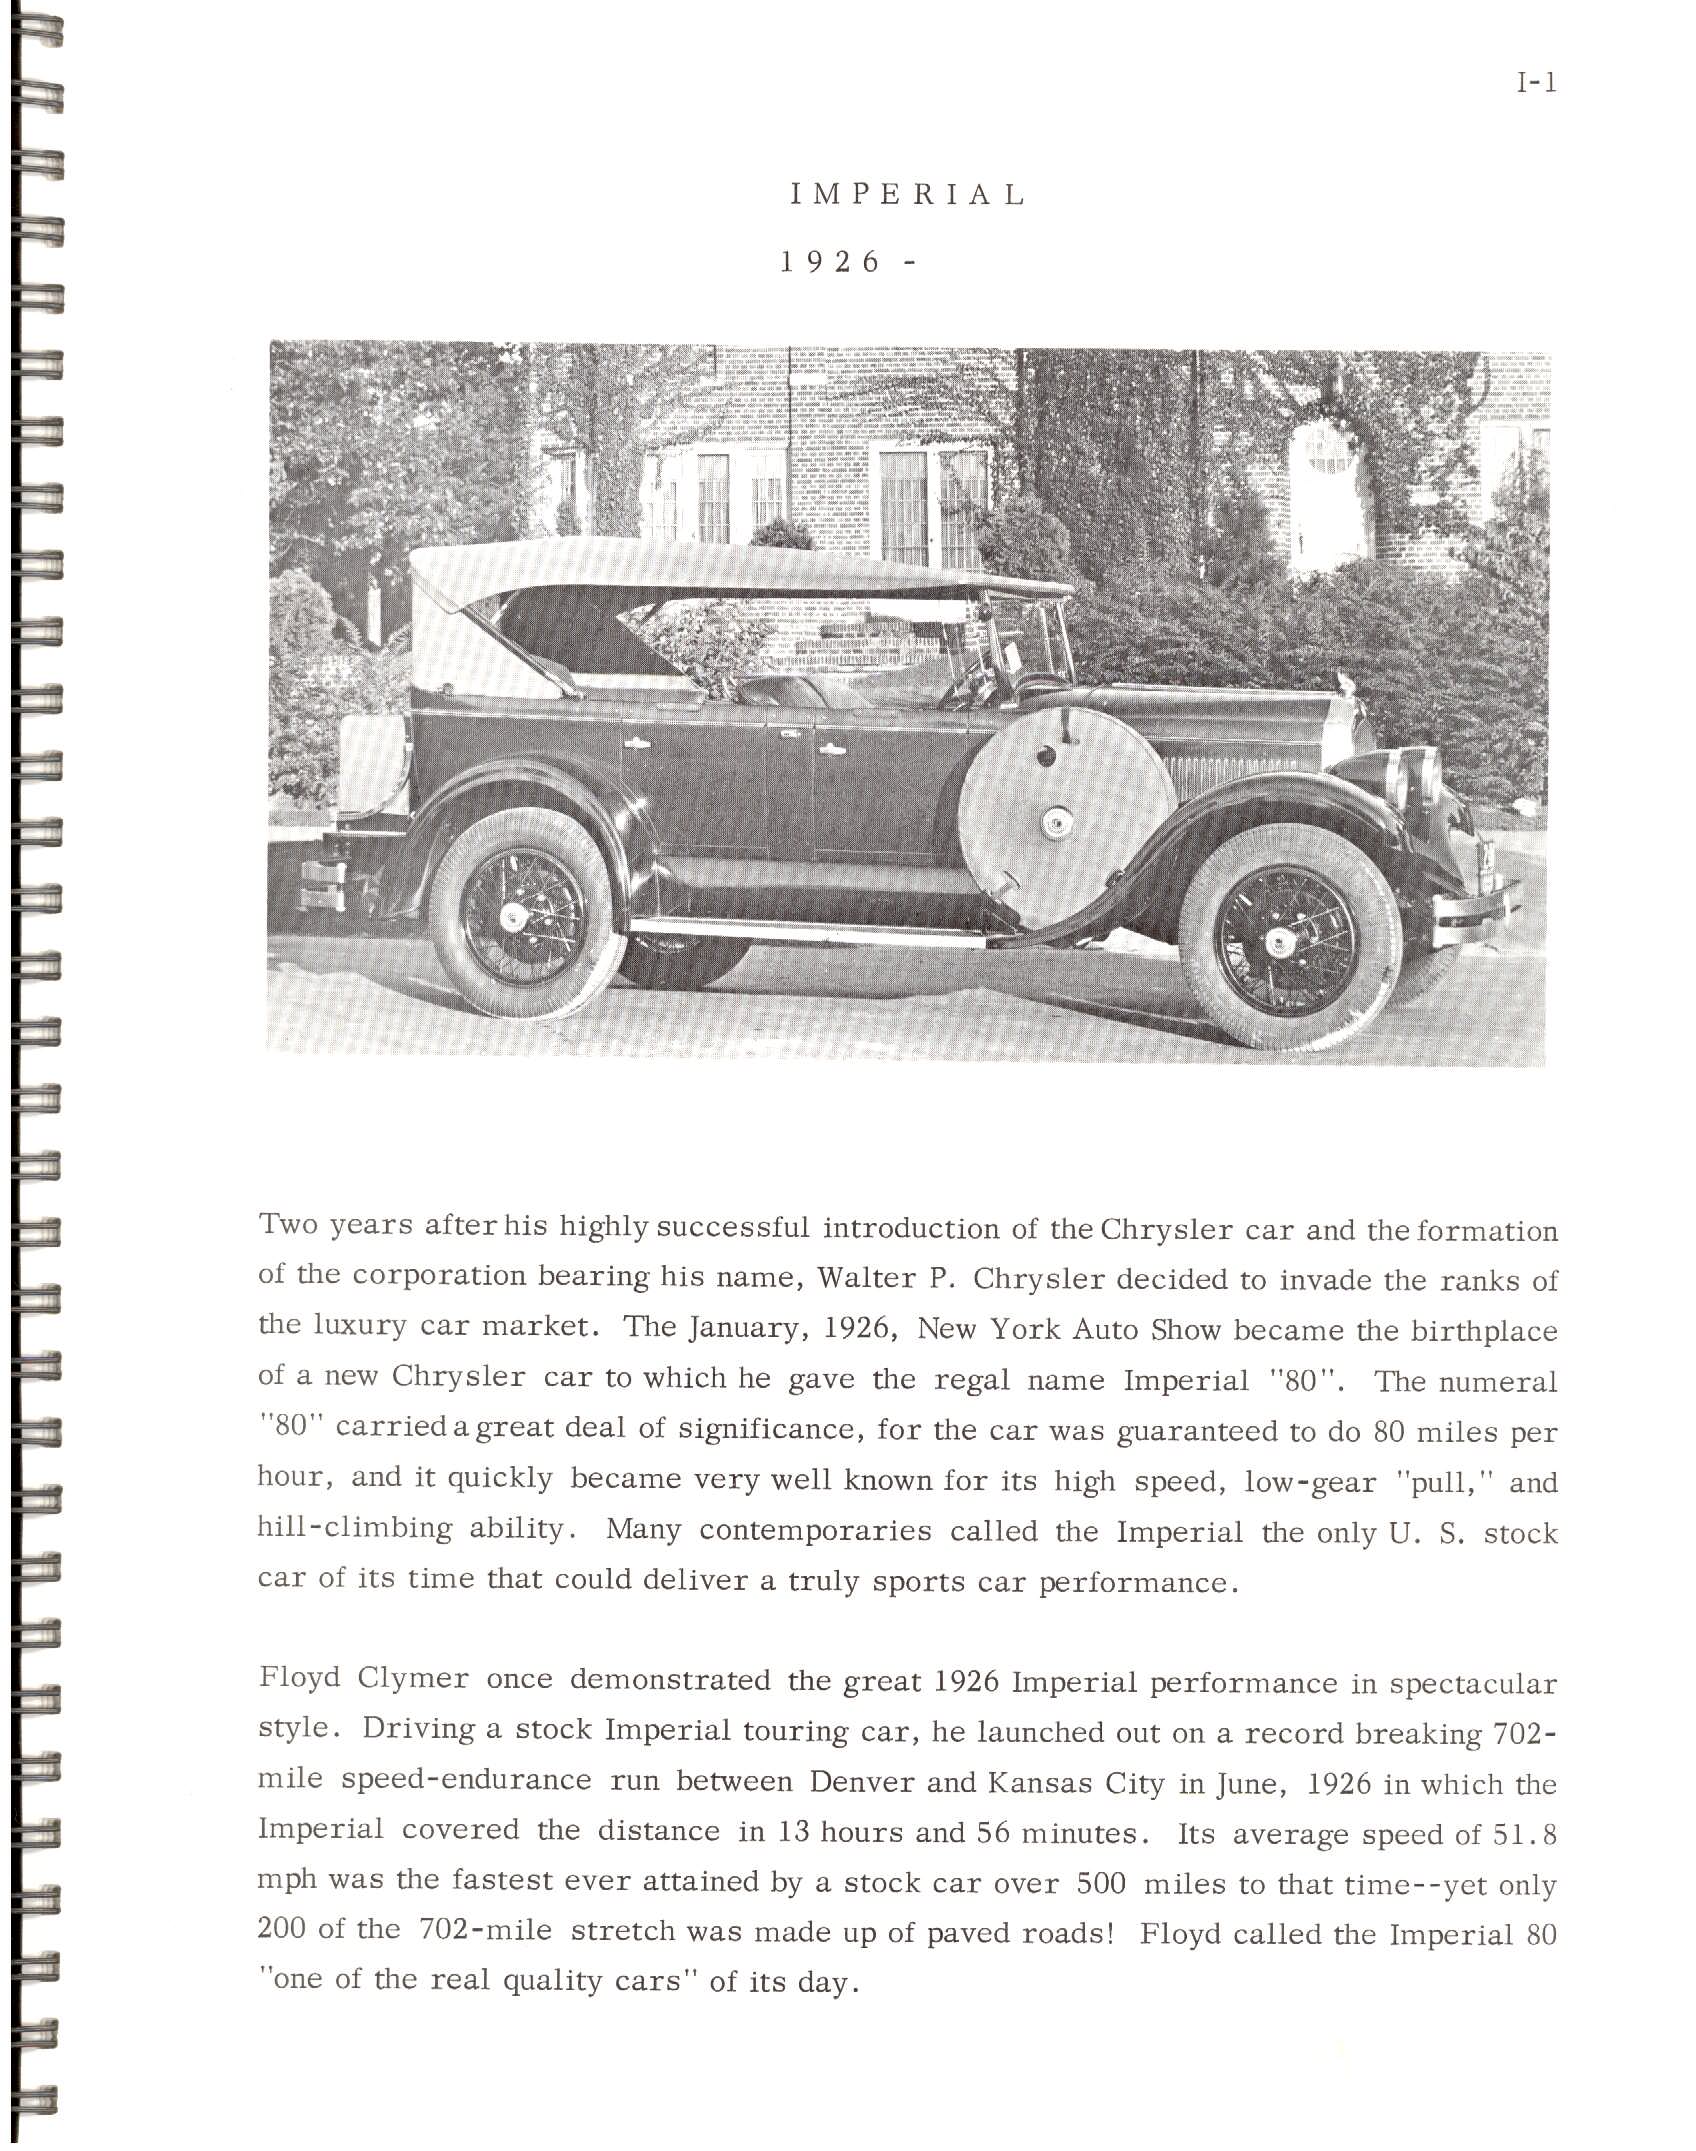 1966-History_Of_Chrysler_Cars-I01